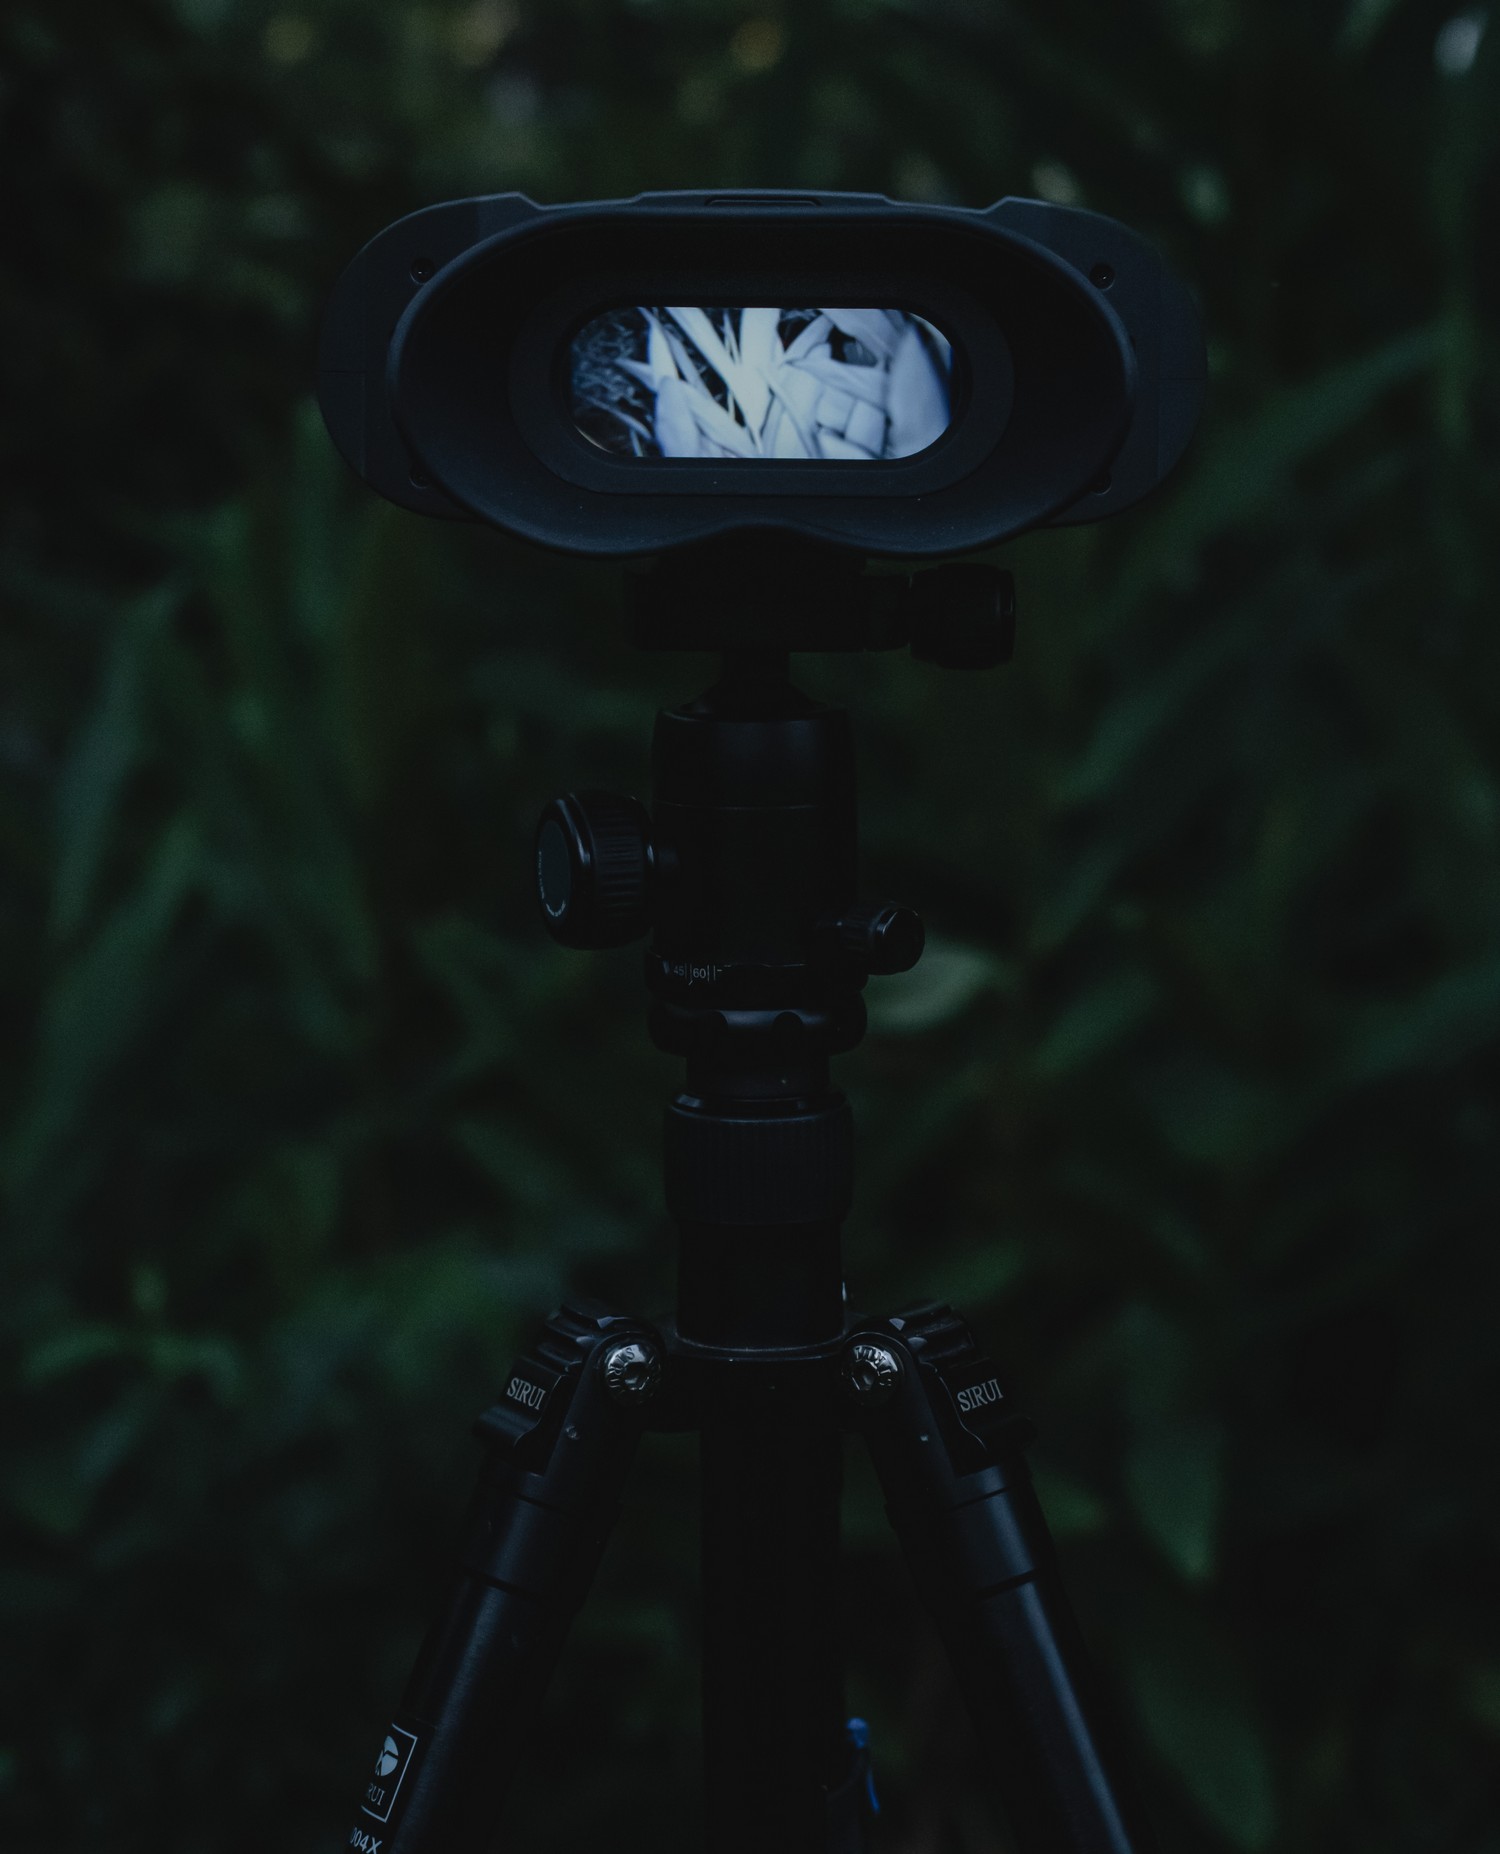 nocne videnie NVB 200 - Auto prepínanie denný a nočný duálny režim